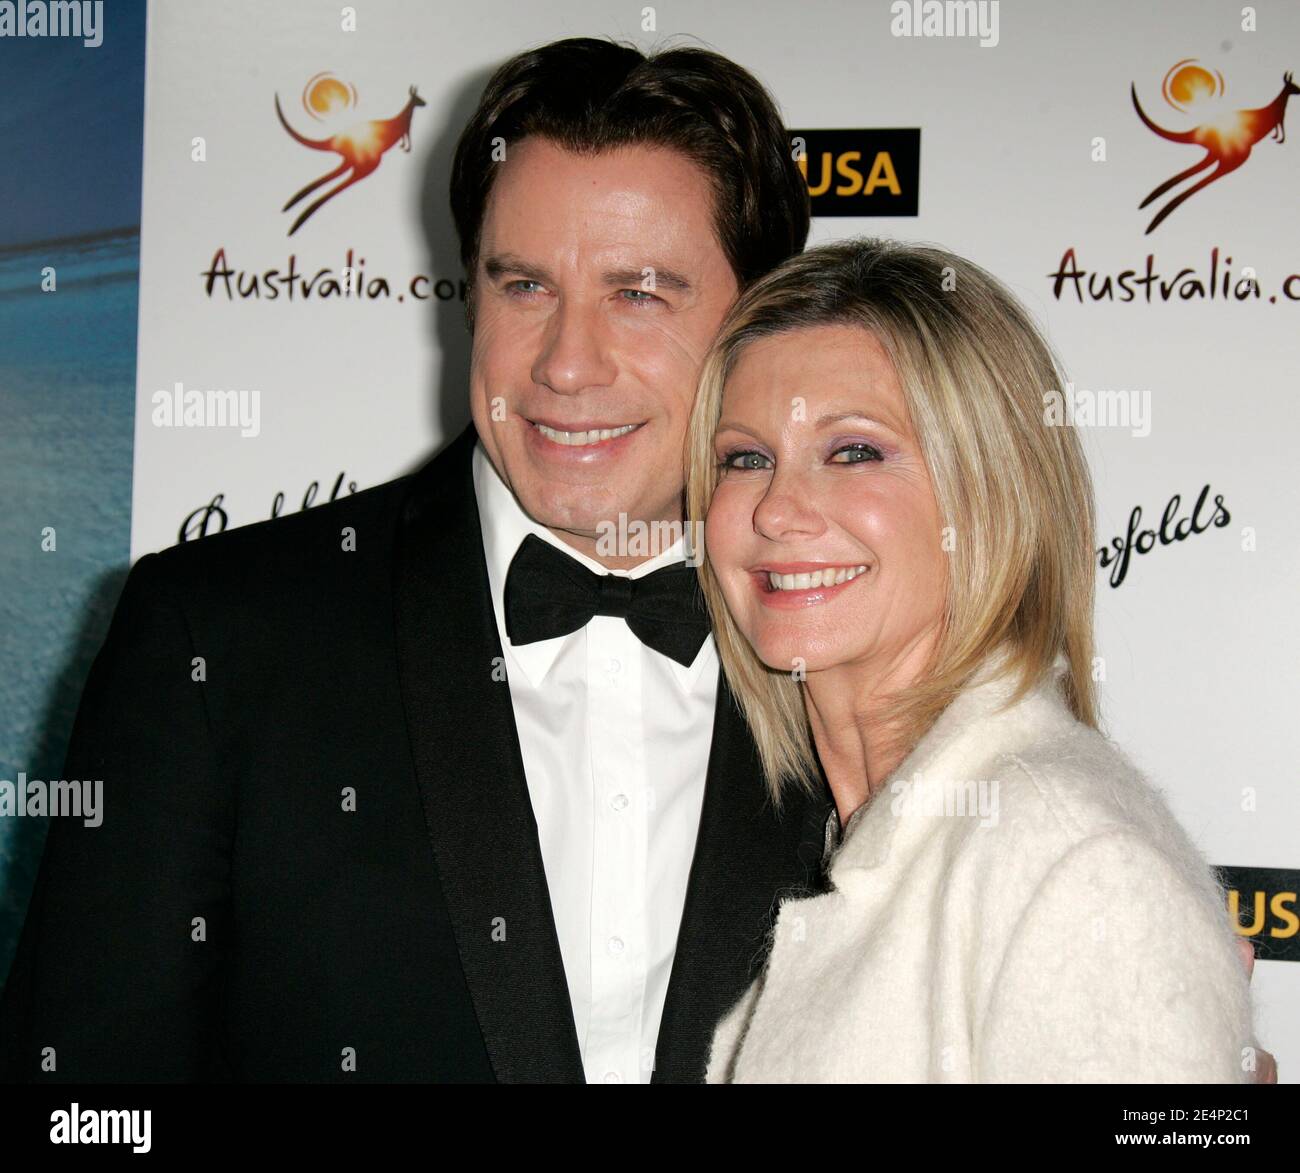 John Travolta et Olivia Newton-John arrivent pour le Gala Black Tie de G'day USA Australia, qui s'est tenu à la grande salle de bal Hollywood and Highland à Los Angeles, CA, USA le samedi 19 janvier 2008. Photo de Walker/ABACAPRESS.COM Banque D'Images